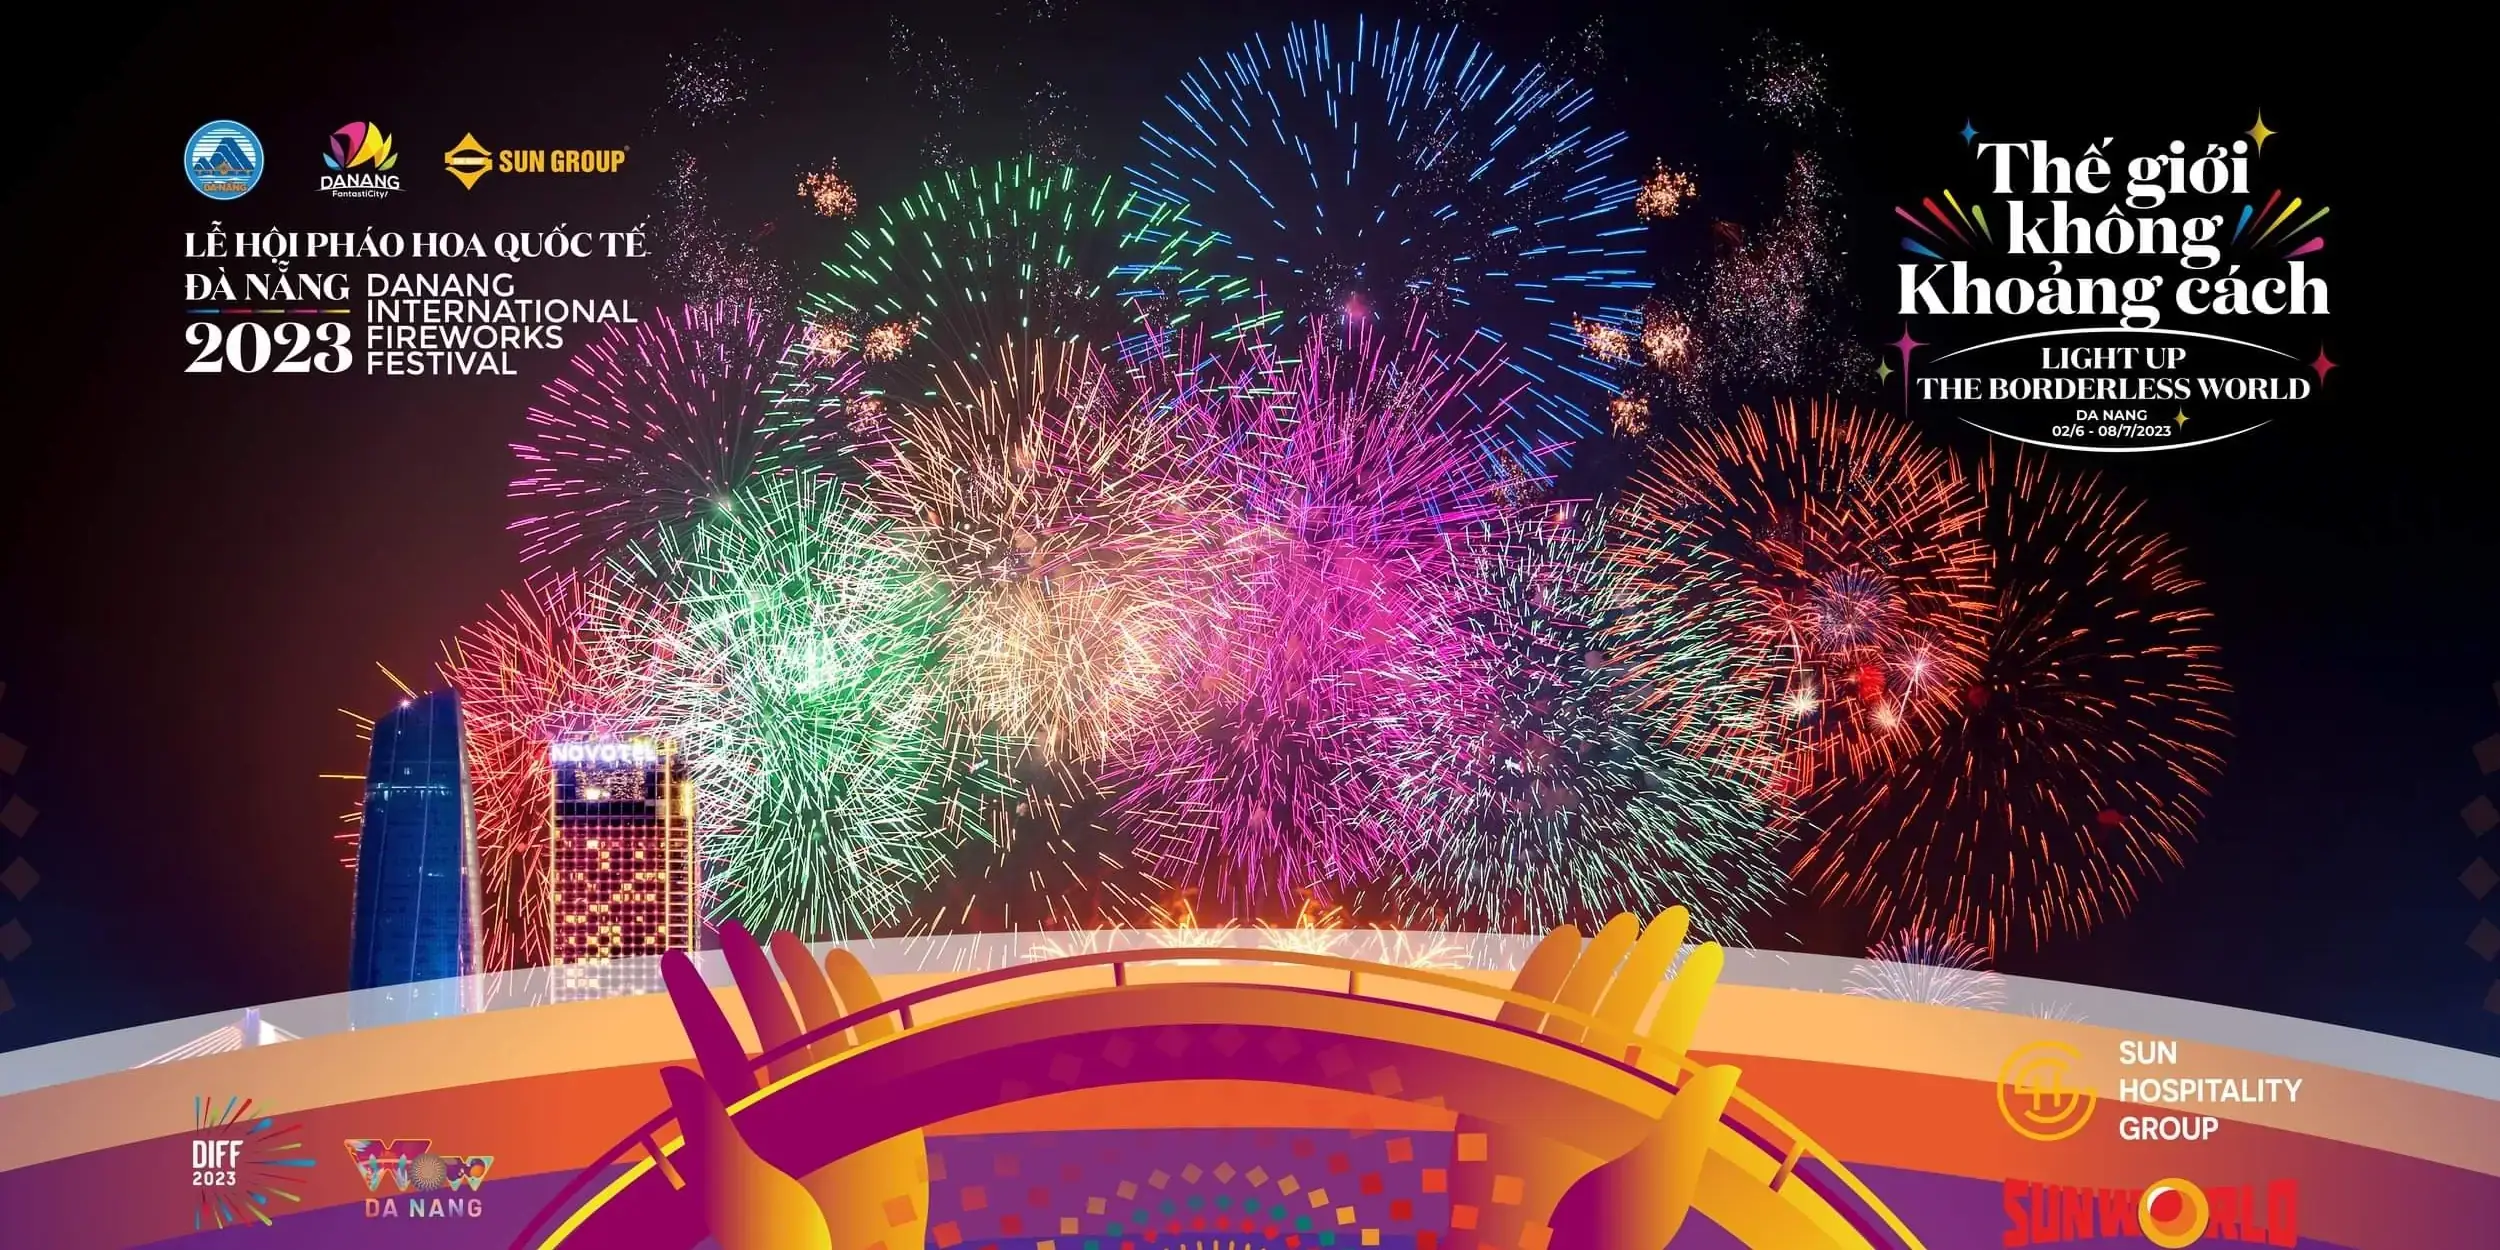 Da Nang International Fireworks Festival 2023